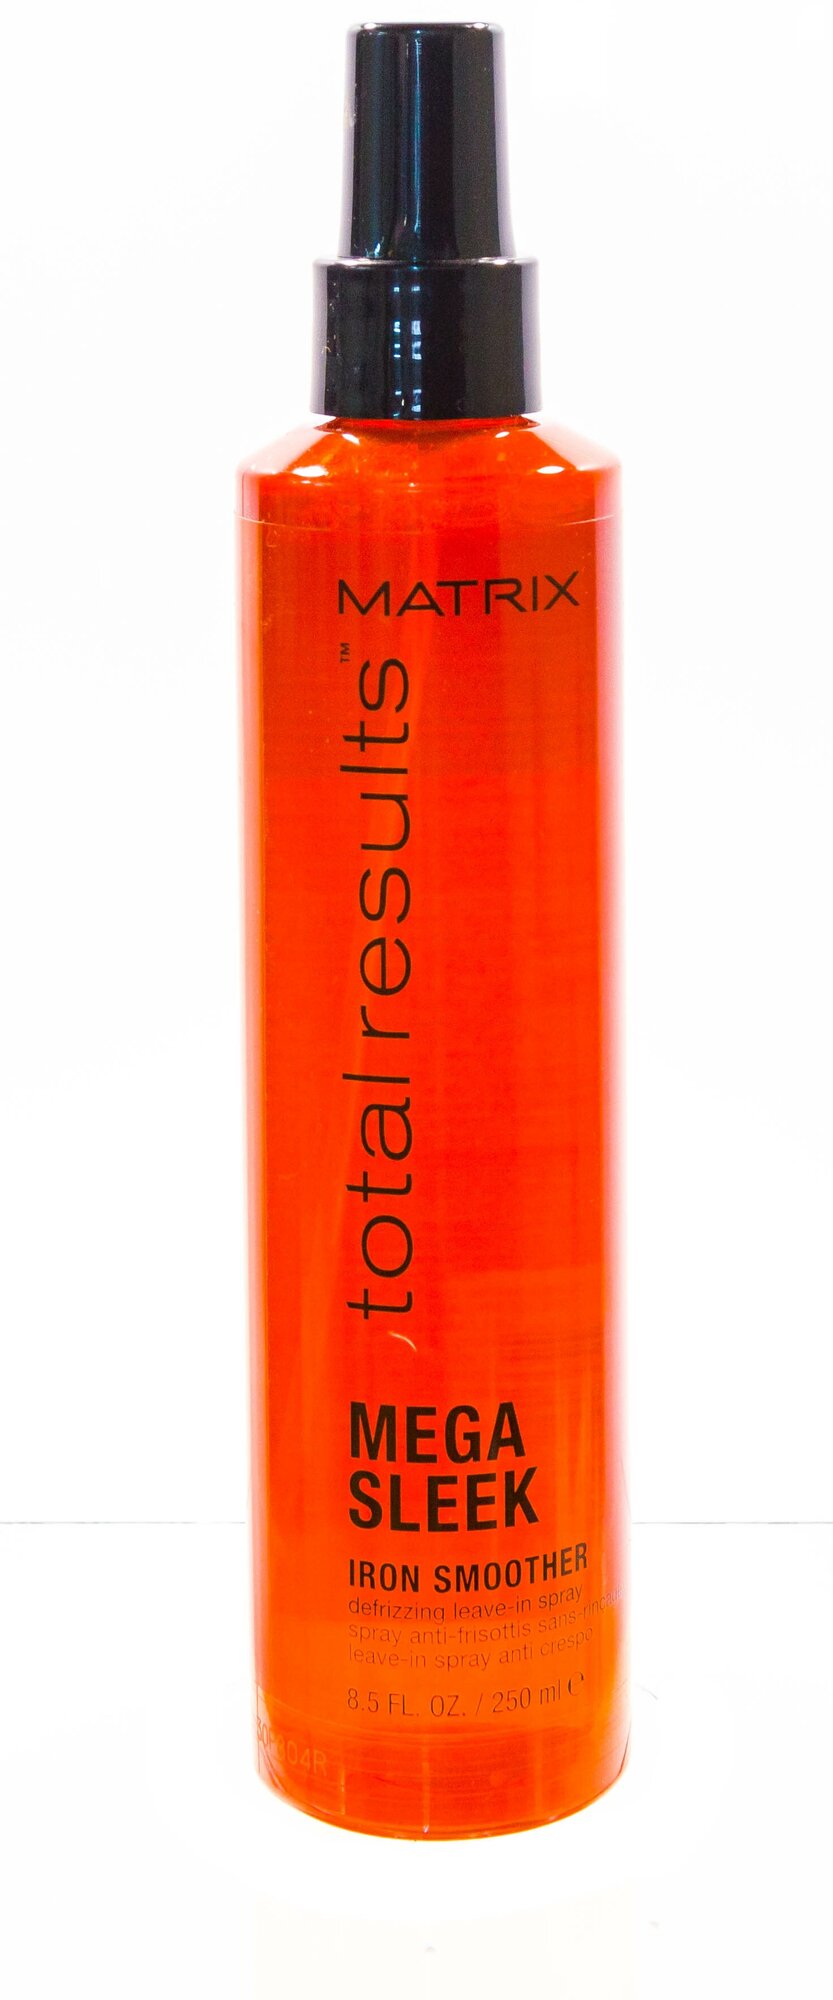 Matrix Спрей Iron Smoother для гладкости волос с термозащитой, 250 мл (Matrix, ) - фото №12